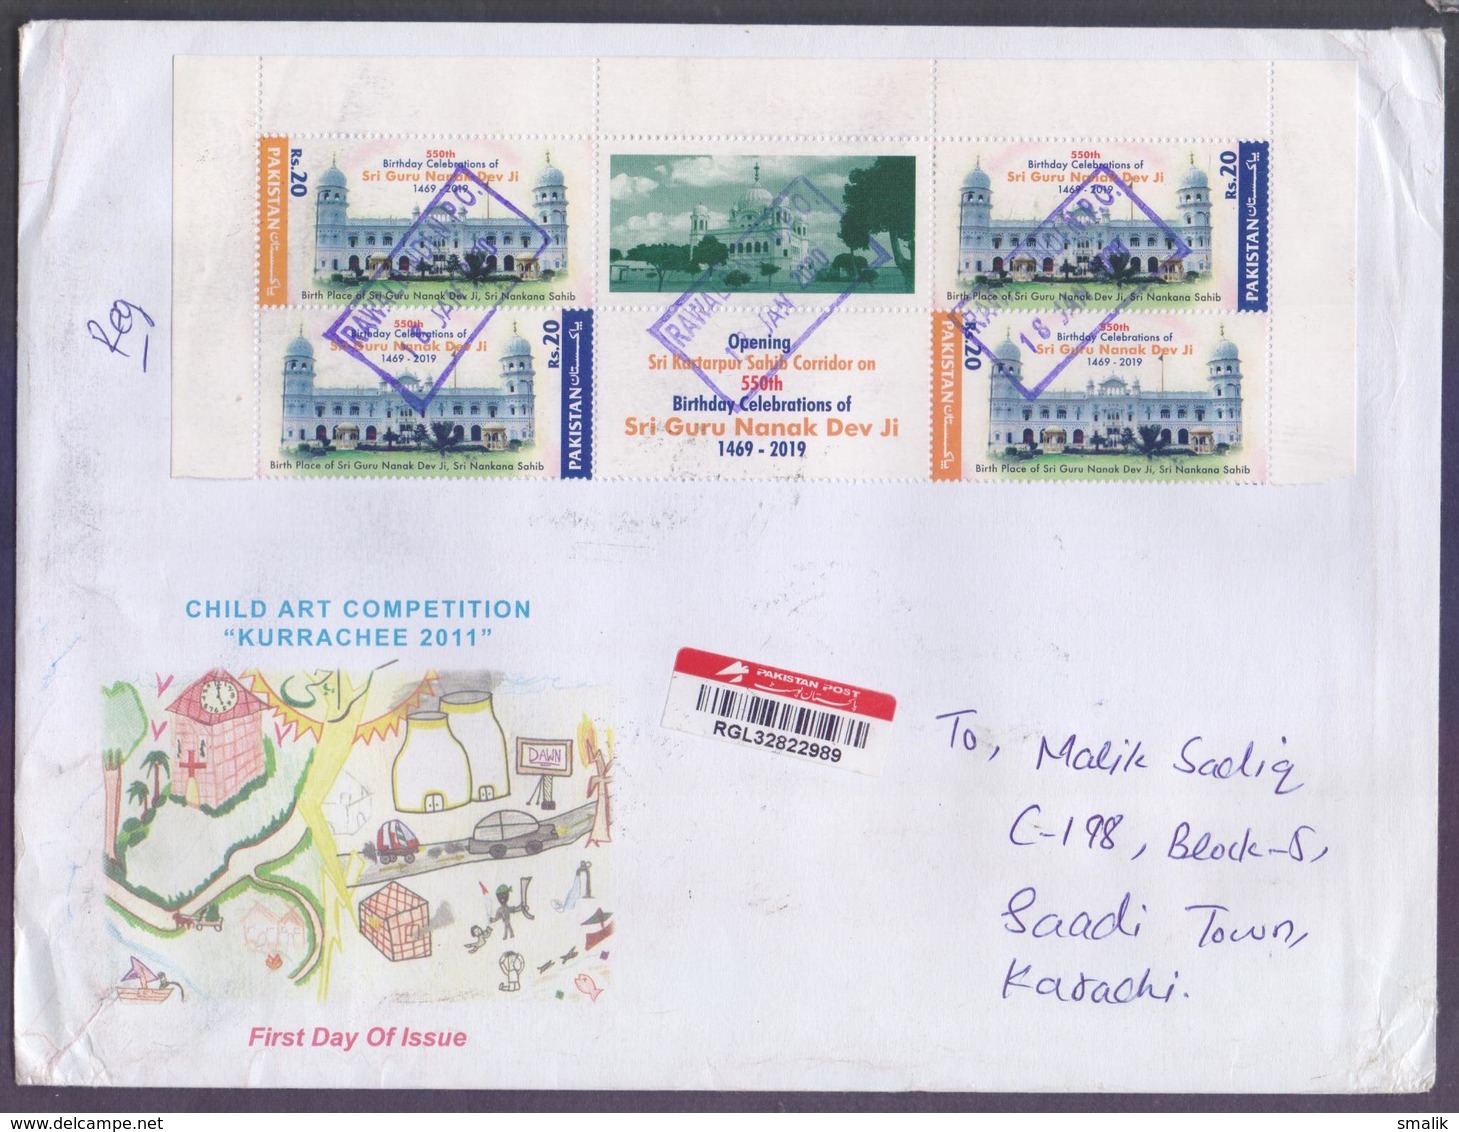 55th Birthday Of Sri Guru Nanak Dev Ji, Postal History Big Cover From PAKISTAN Registered Used 18.1.2020 From RAWALPINDI - Pakistan